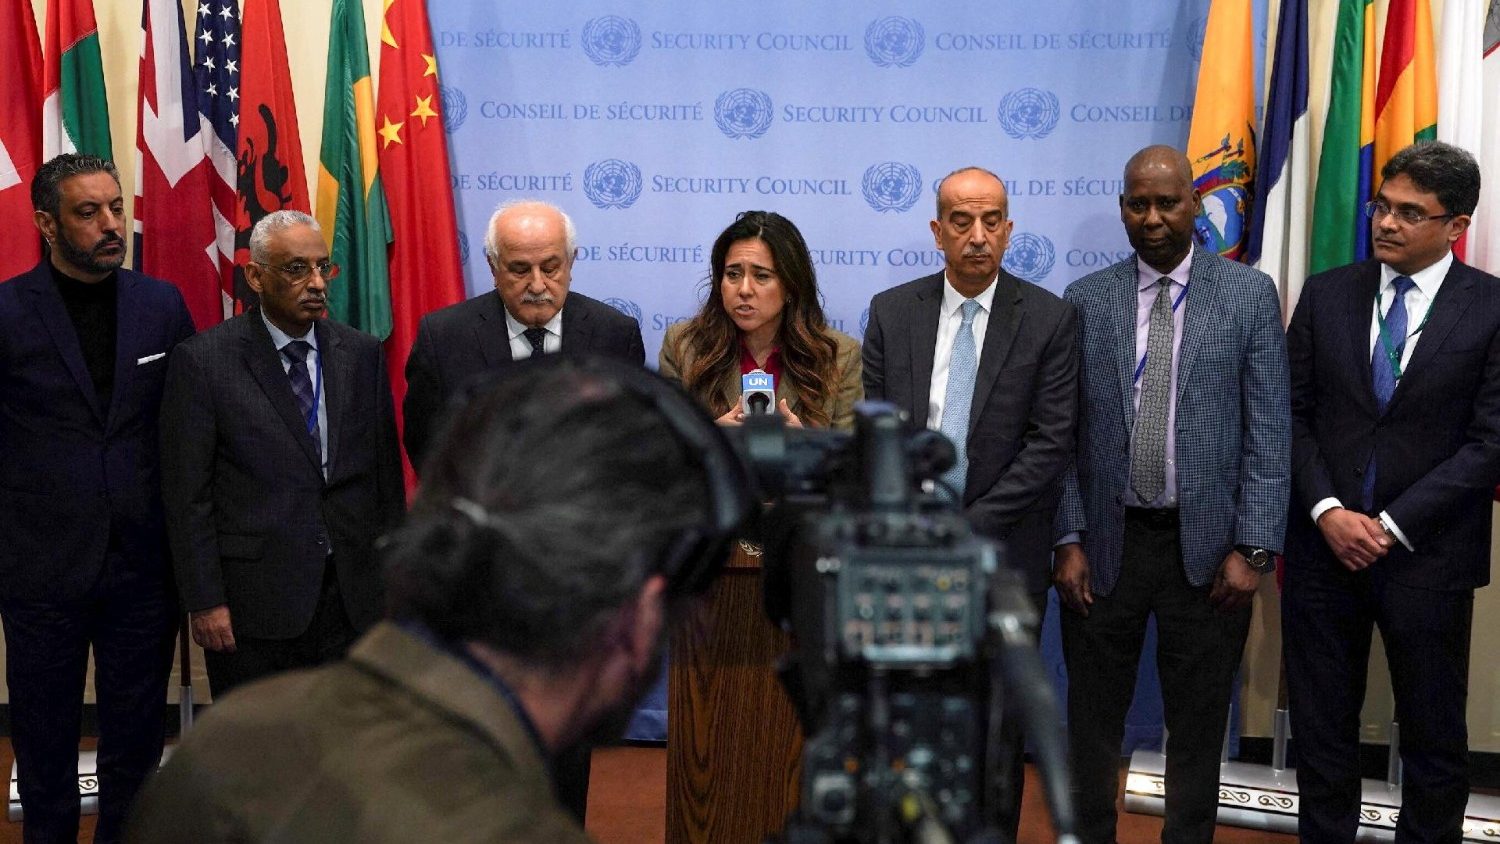 Bliskiego Wschodu, Organizacja Narodów Zjednoczonych głosuje nad rezolucją: zapewnienie pomocy Strefie Gazy, ale bez zatrzymywania się